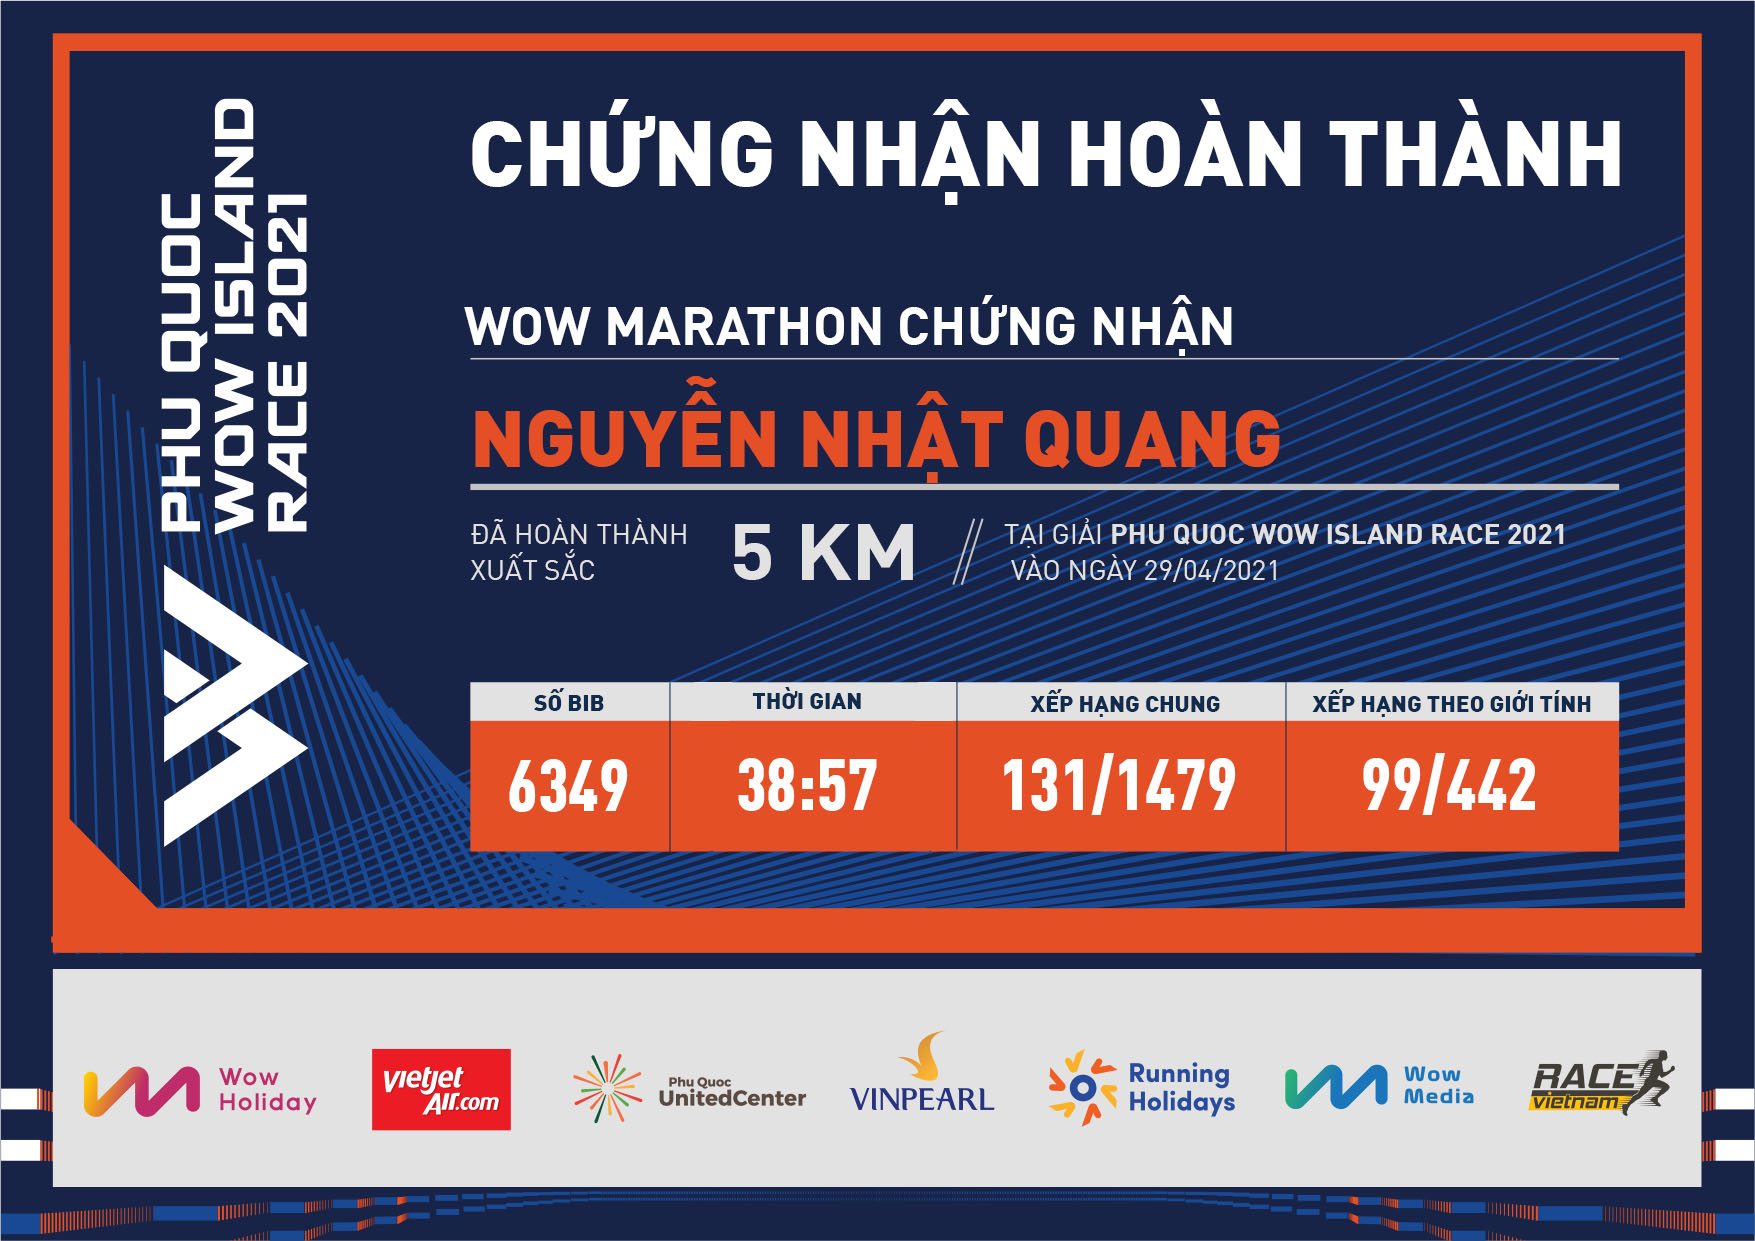 6349 - Nguyễn Nhật Quang